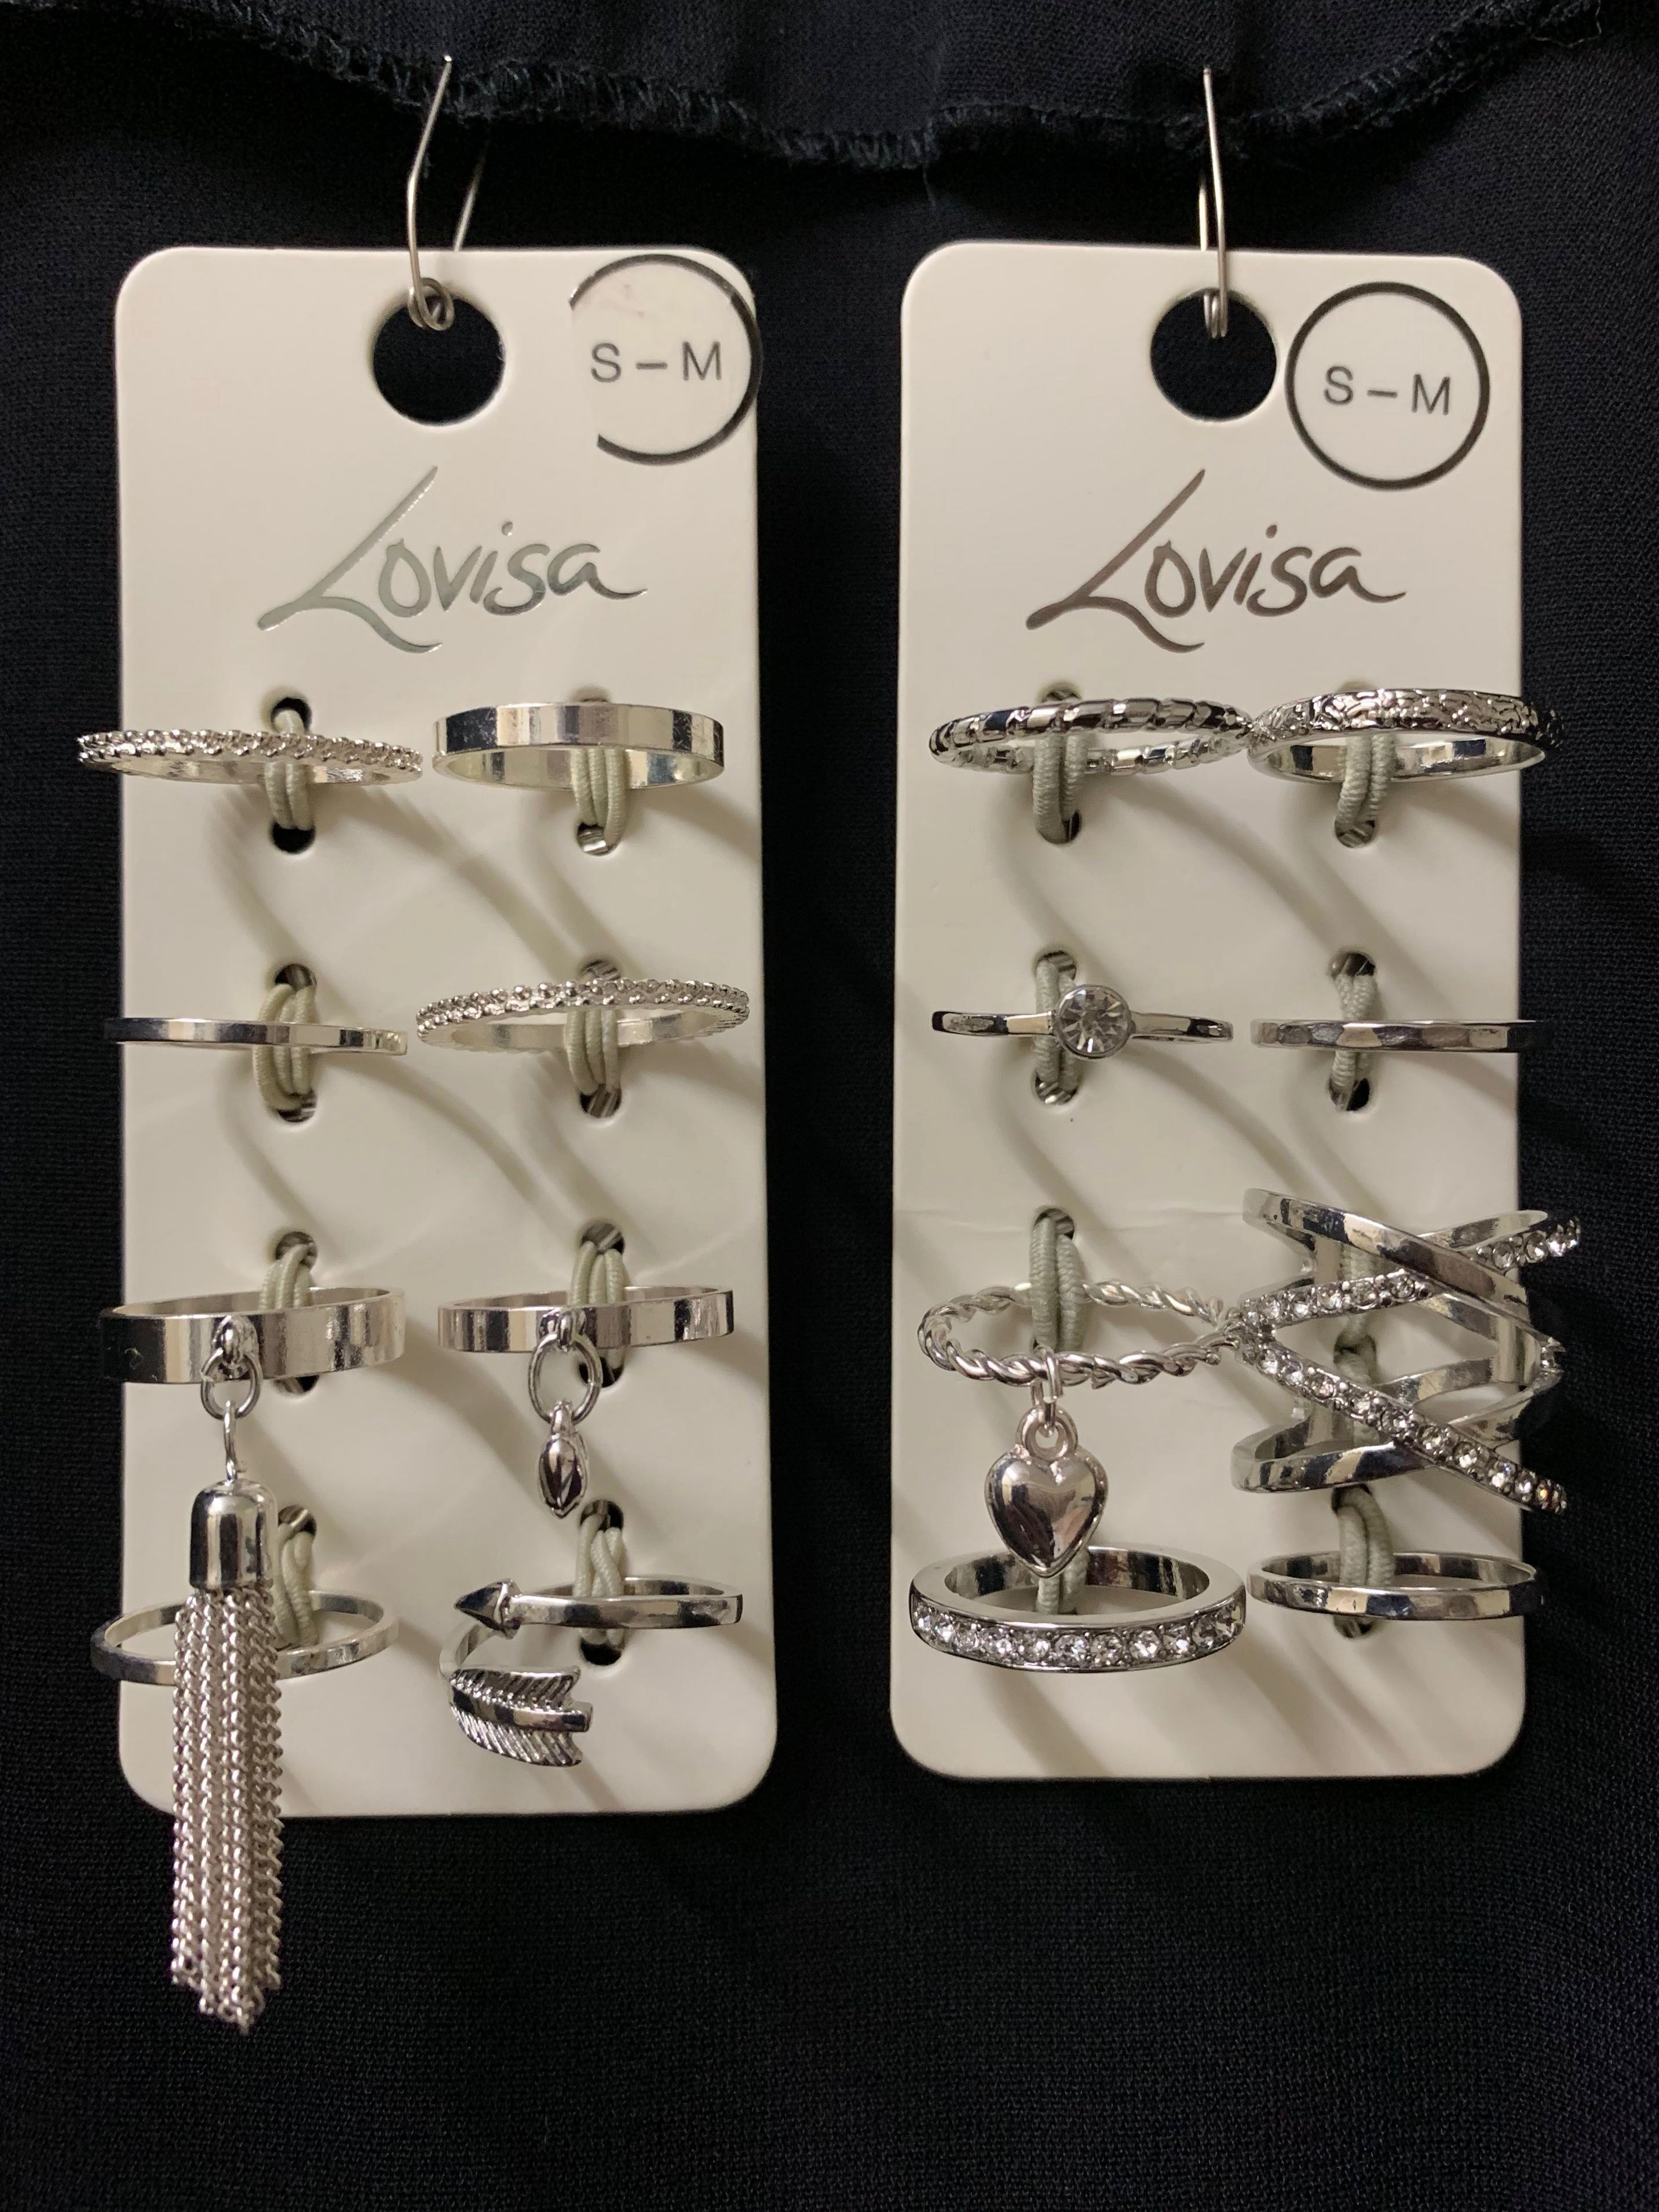 Lovisa Rings vs Accessorize Rings